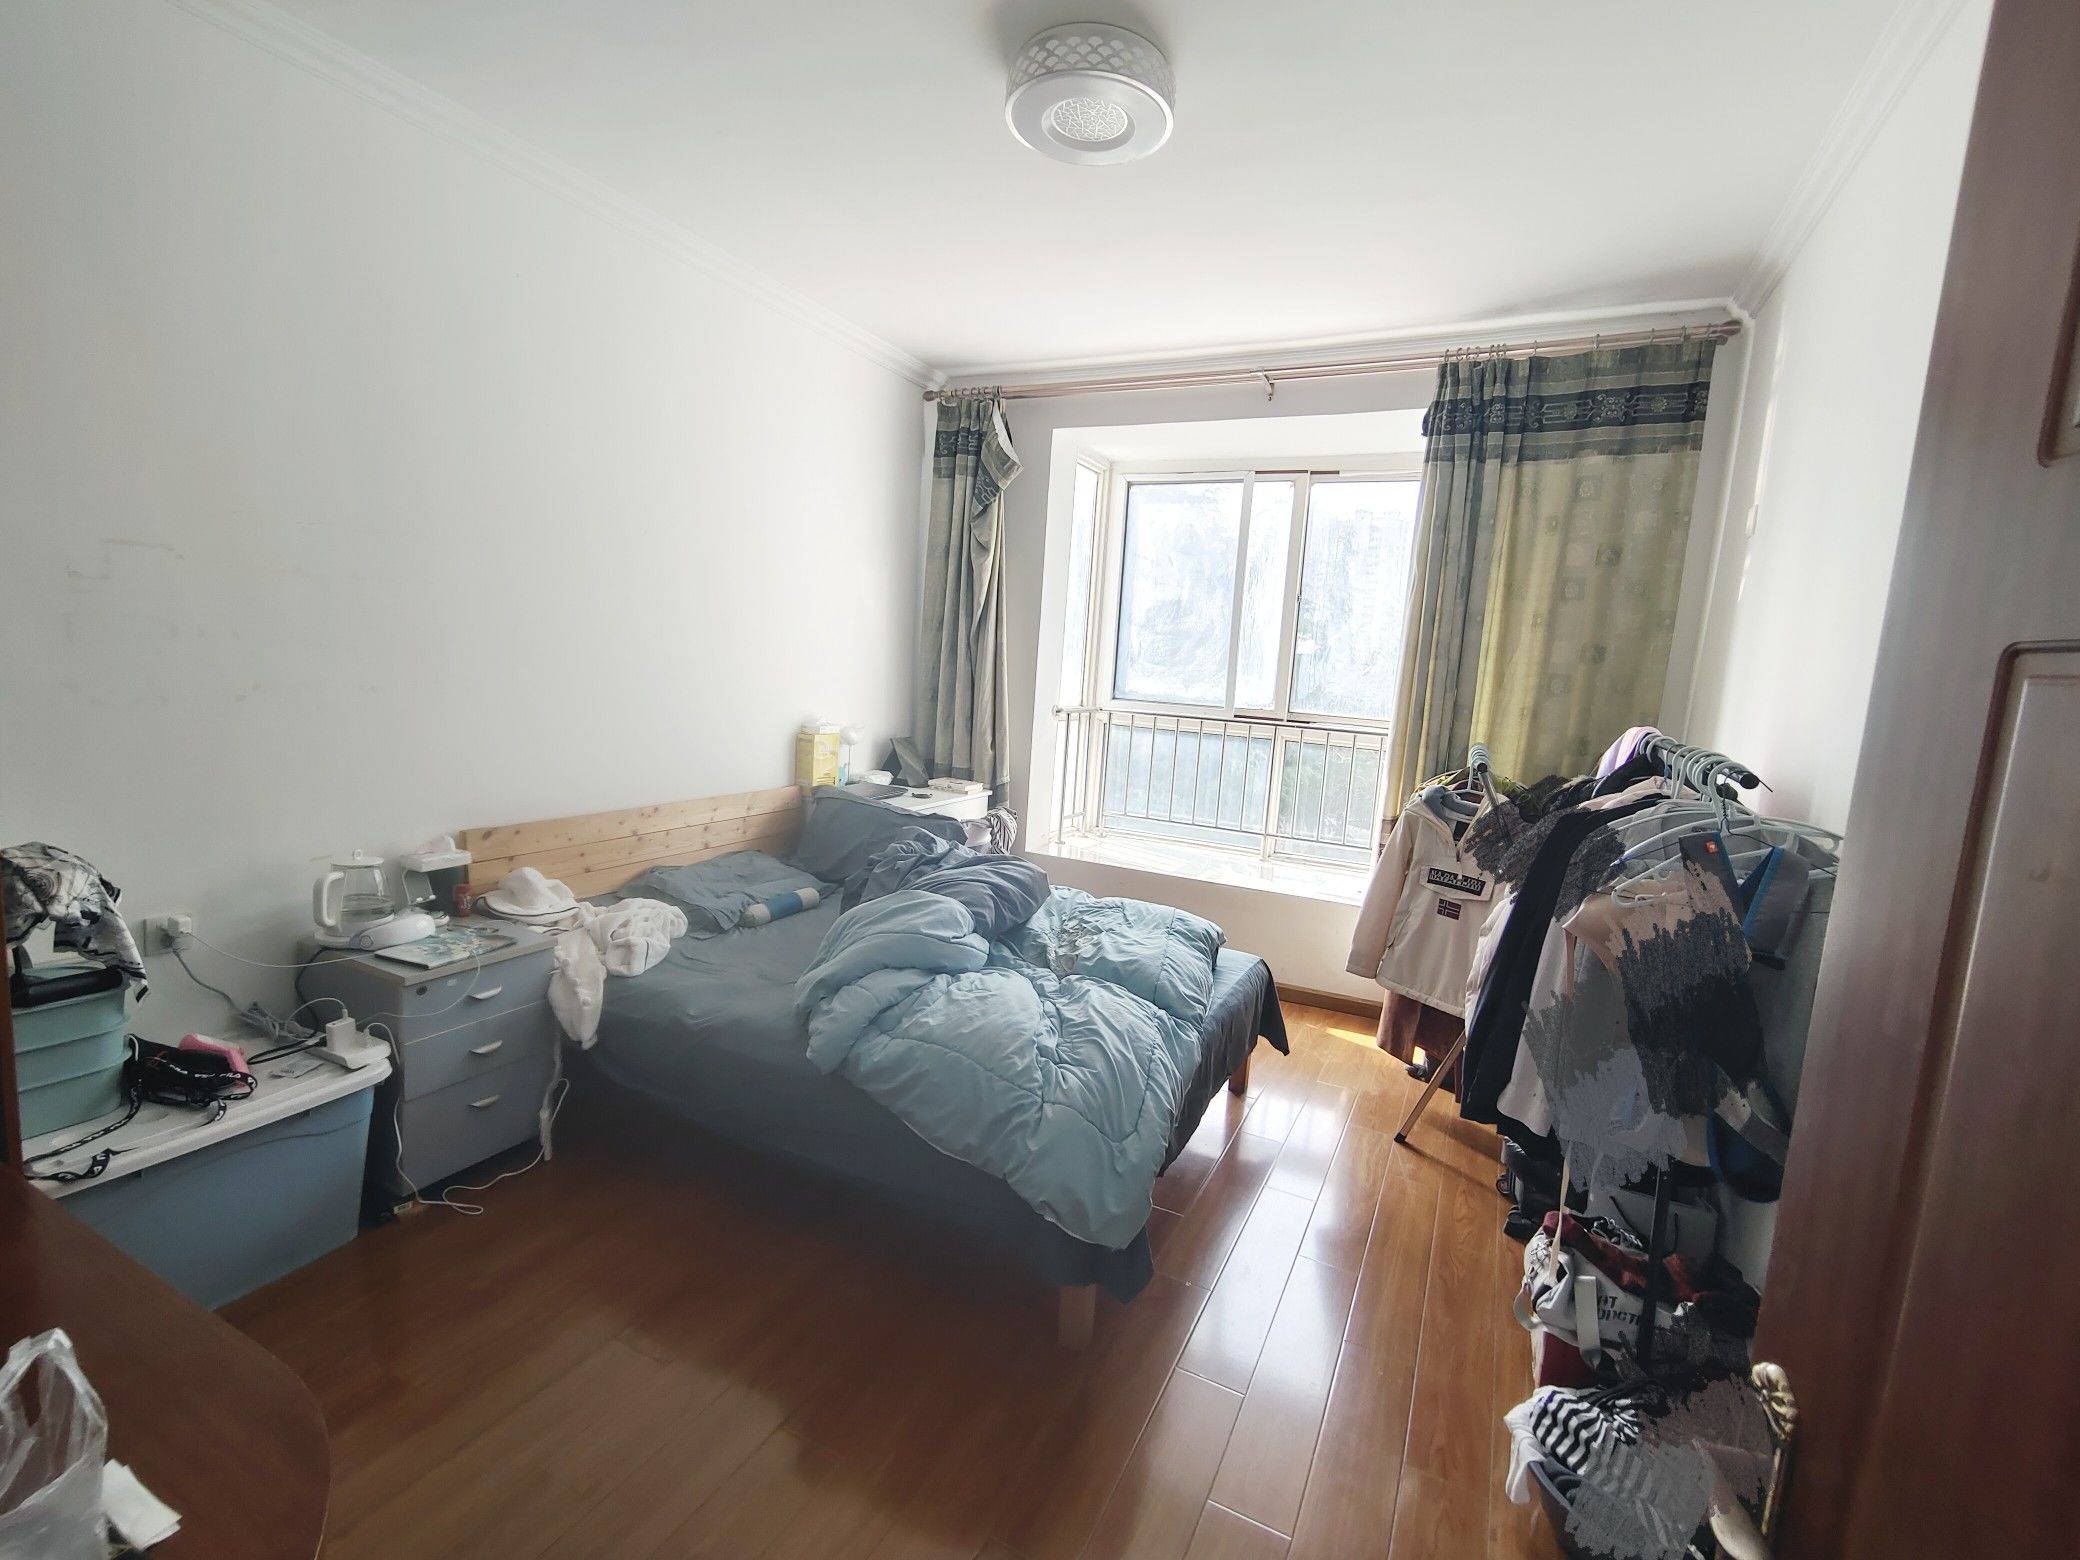 Qingdao-Licang-Cozy Home,No Gender Limit